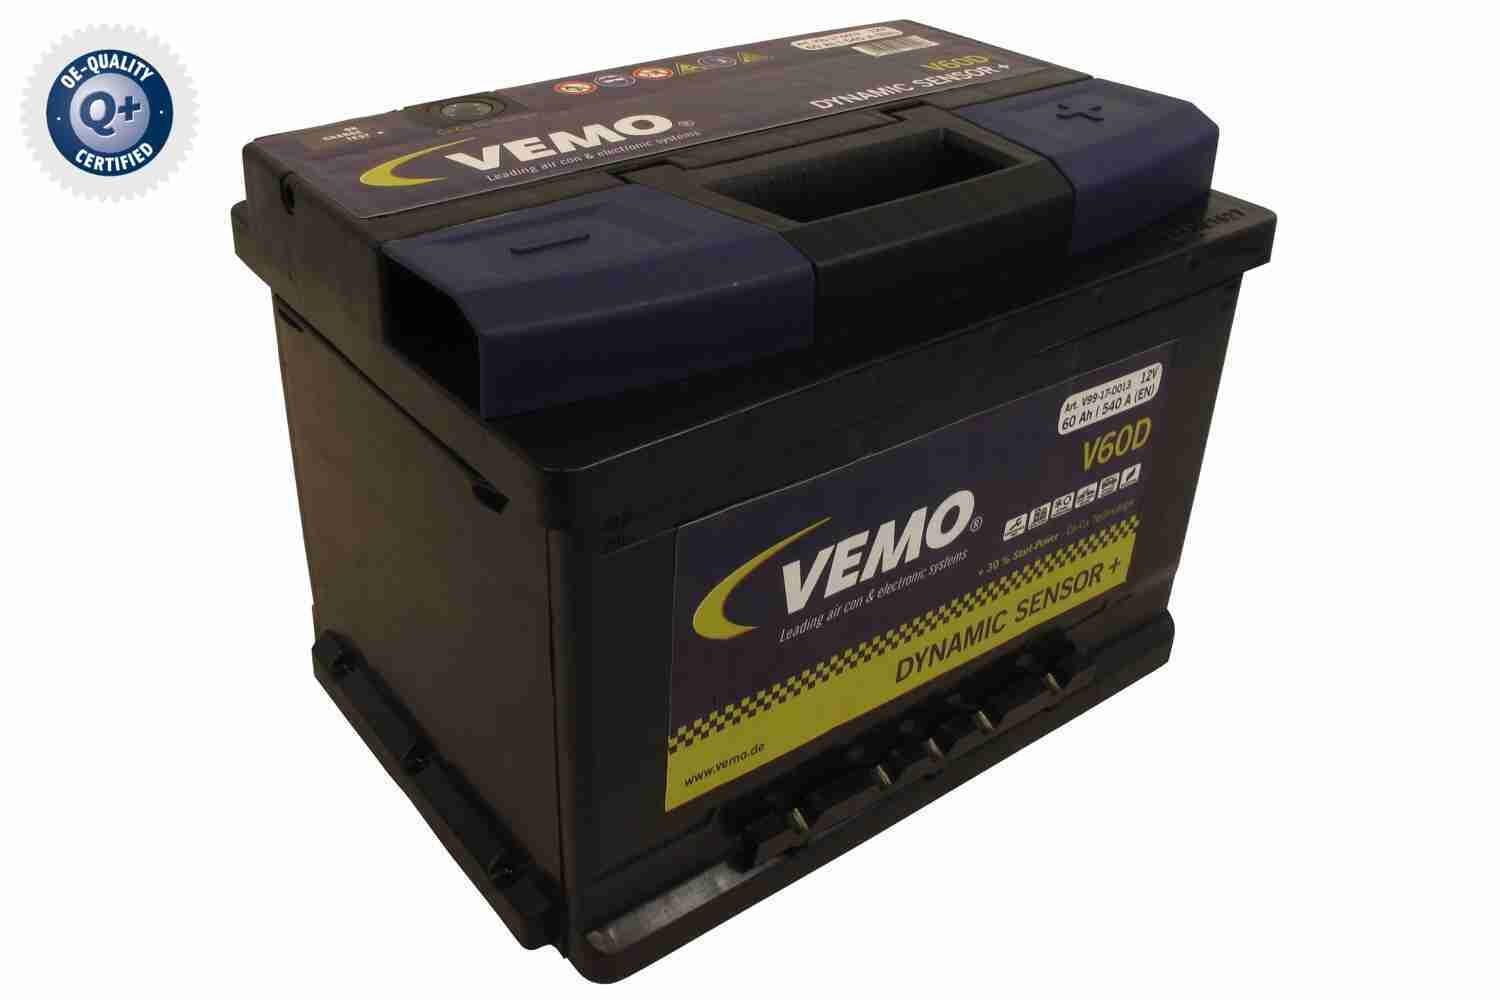 Obrázok Batéria VEMO Q+, original equipment manufacturer quality V99170013